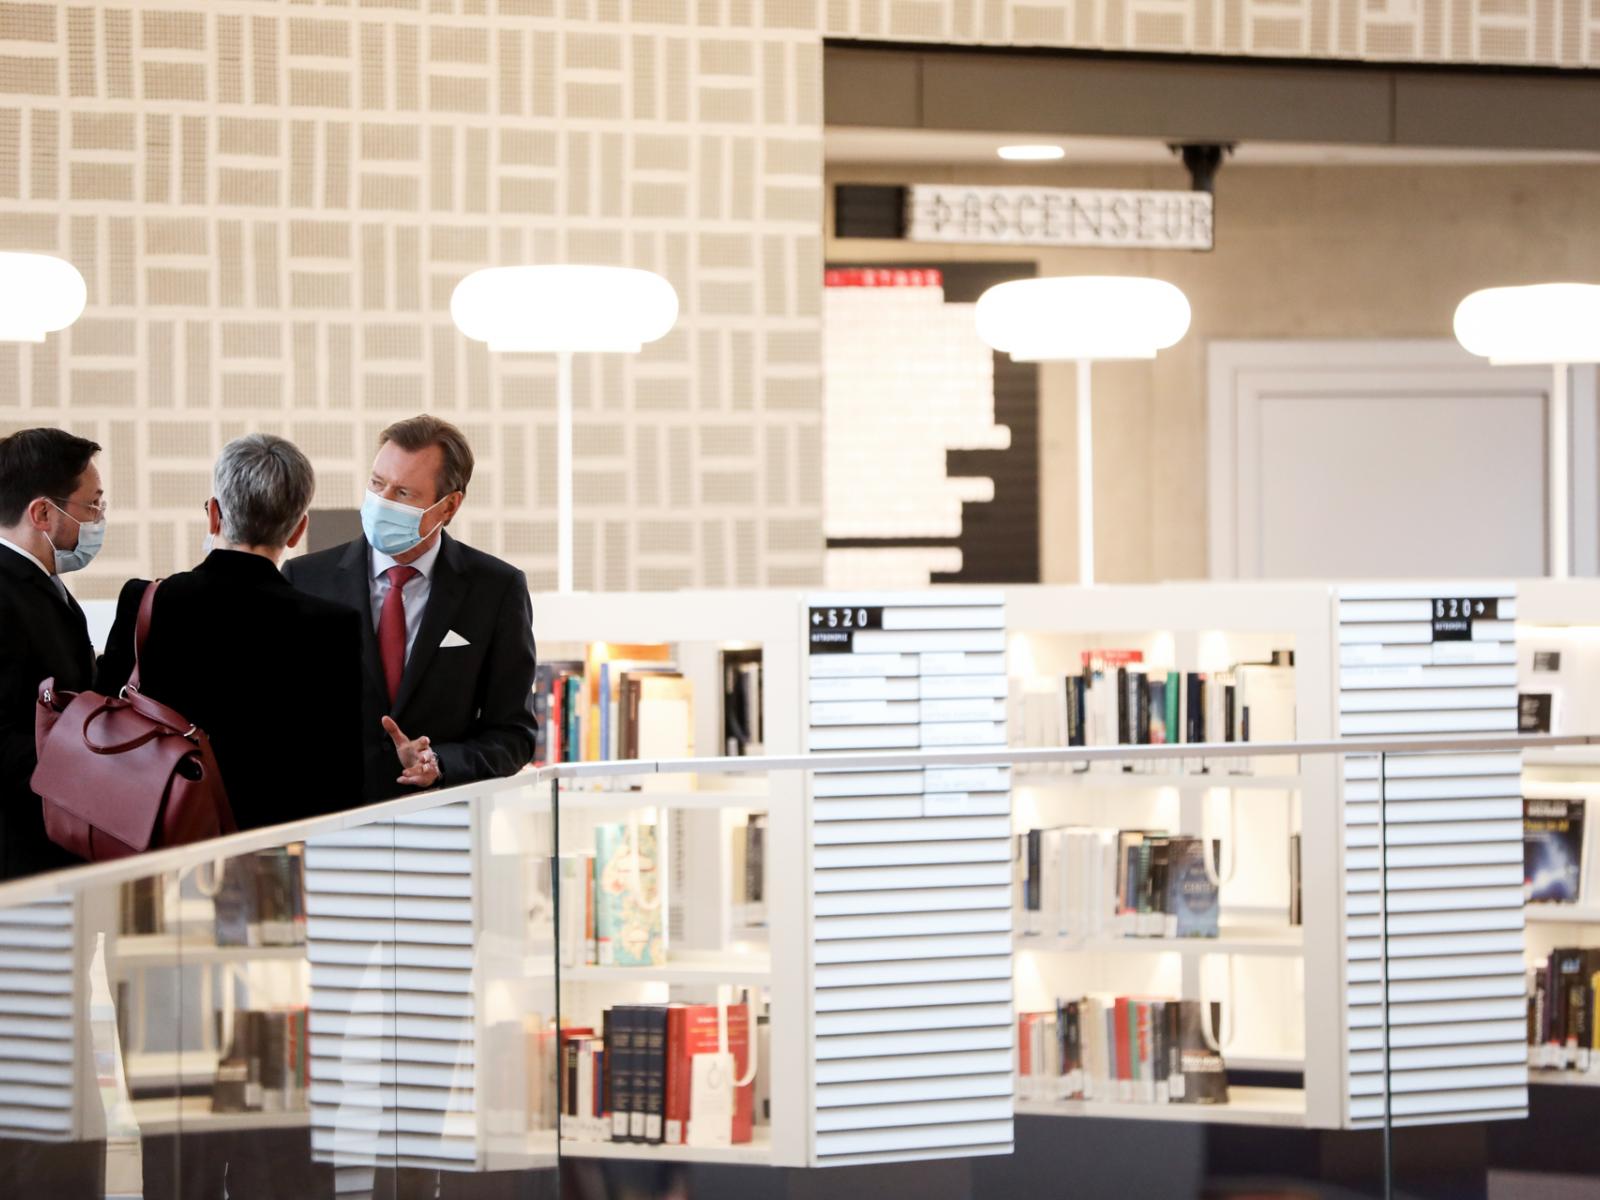 Le Grand-Duc visite la bibliothèque nationale du Luxembourg